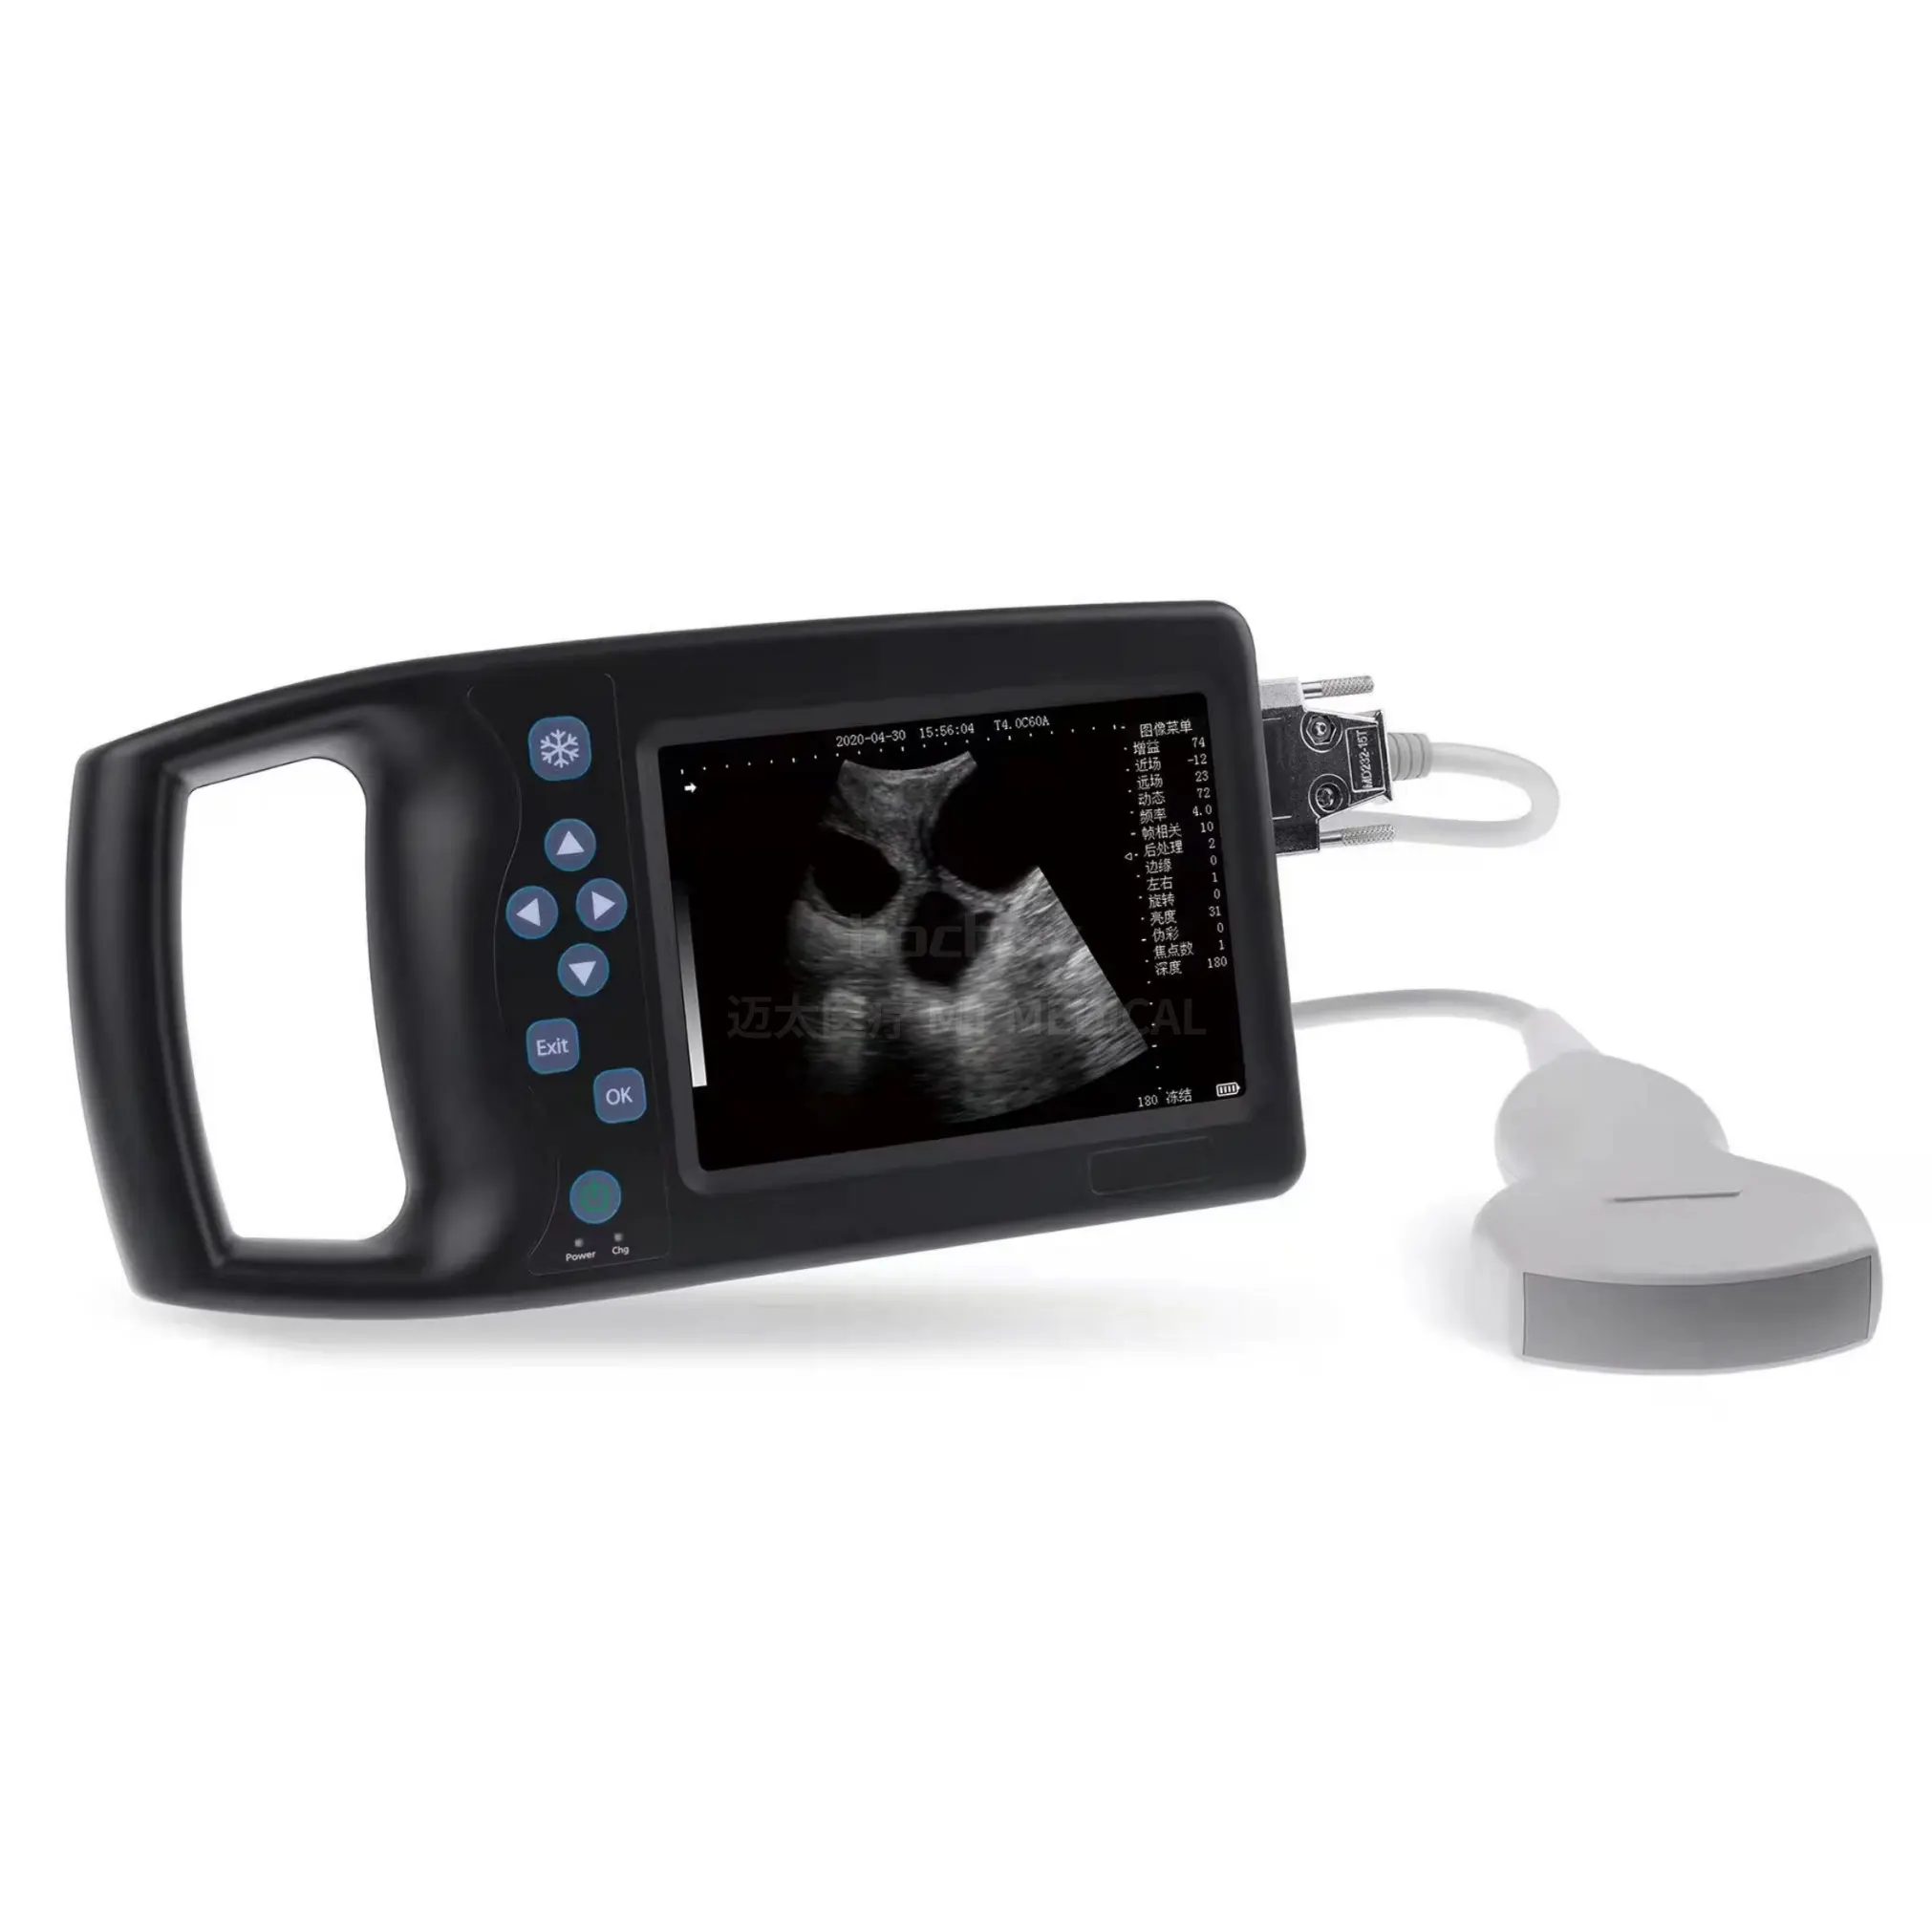 MT-MEDICAL One Stop Medical Supplier Ultrasound Devices Dog Scanner Pig Scanner Equine Cow Bovine Animal Ultrasound Machine